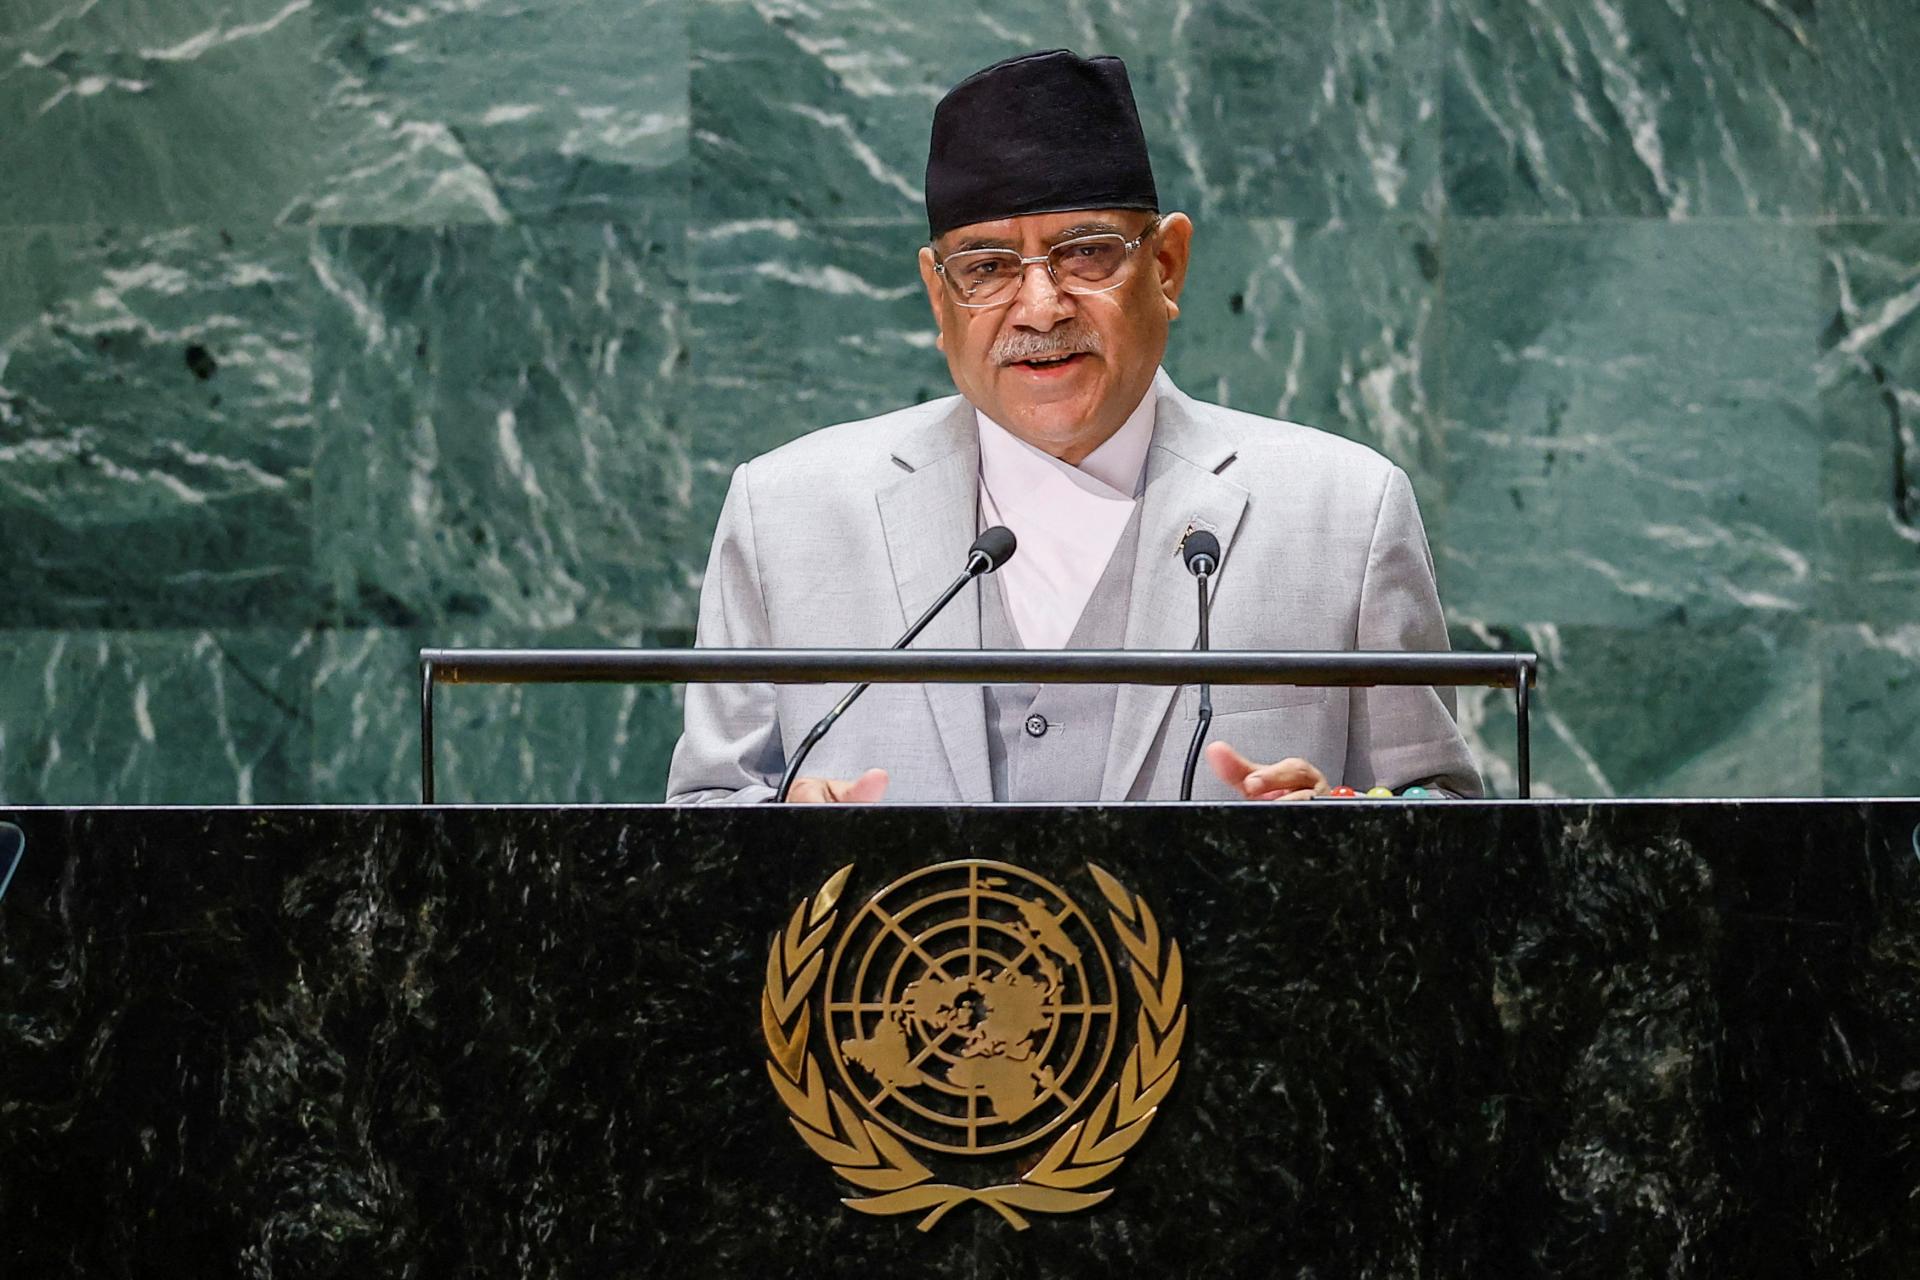 Vláda nepálskeho premiéra Dahala po odchode koaličného partnera stratila väčšinu